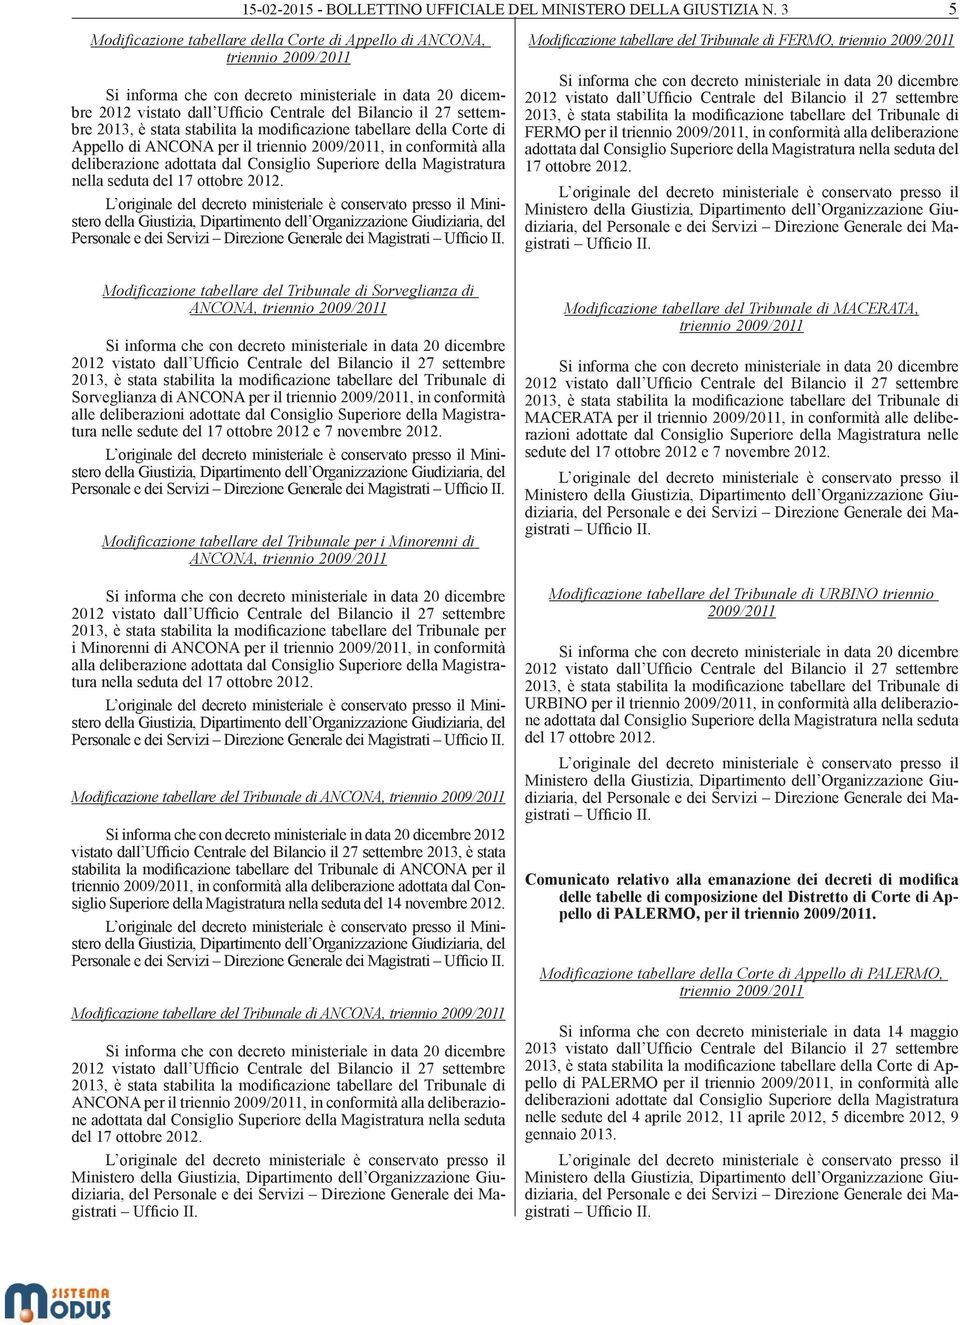 settembre 2013, è stata stabilita la modificazione tabellare della Corte di Appello di ANCONA per il triennio 2009/2011, in conformità alla deliberazione adottata dal Consiglio Superiore della